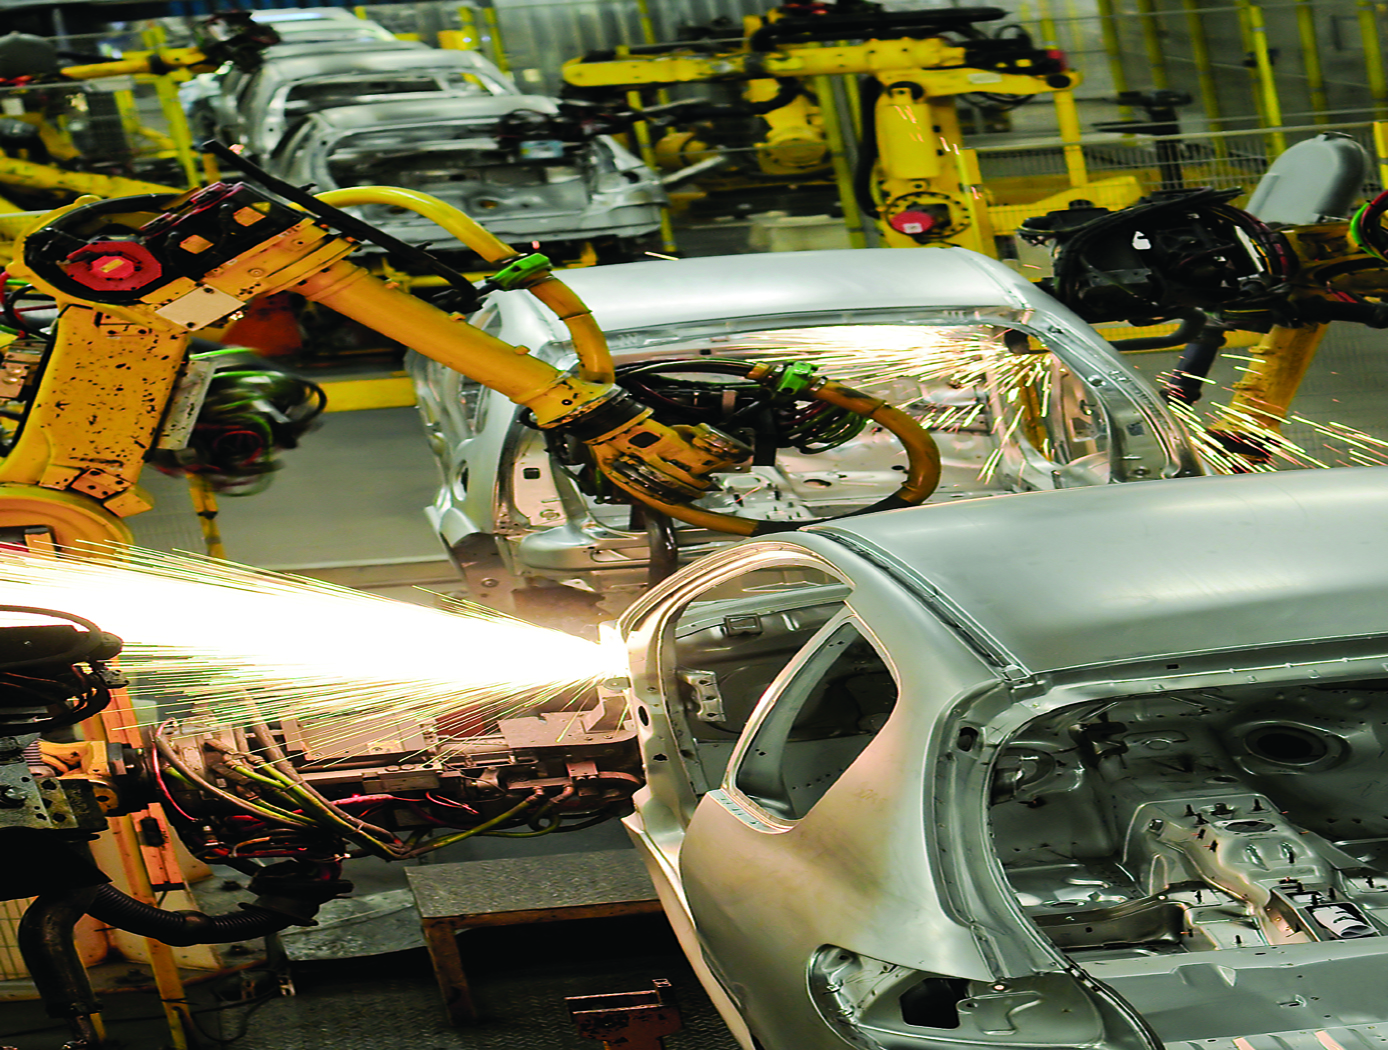 Automotive assembly line